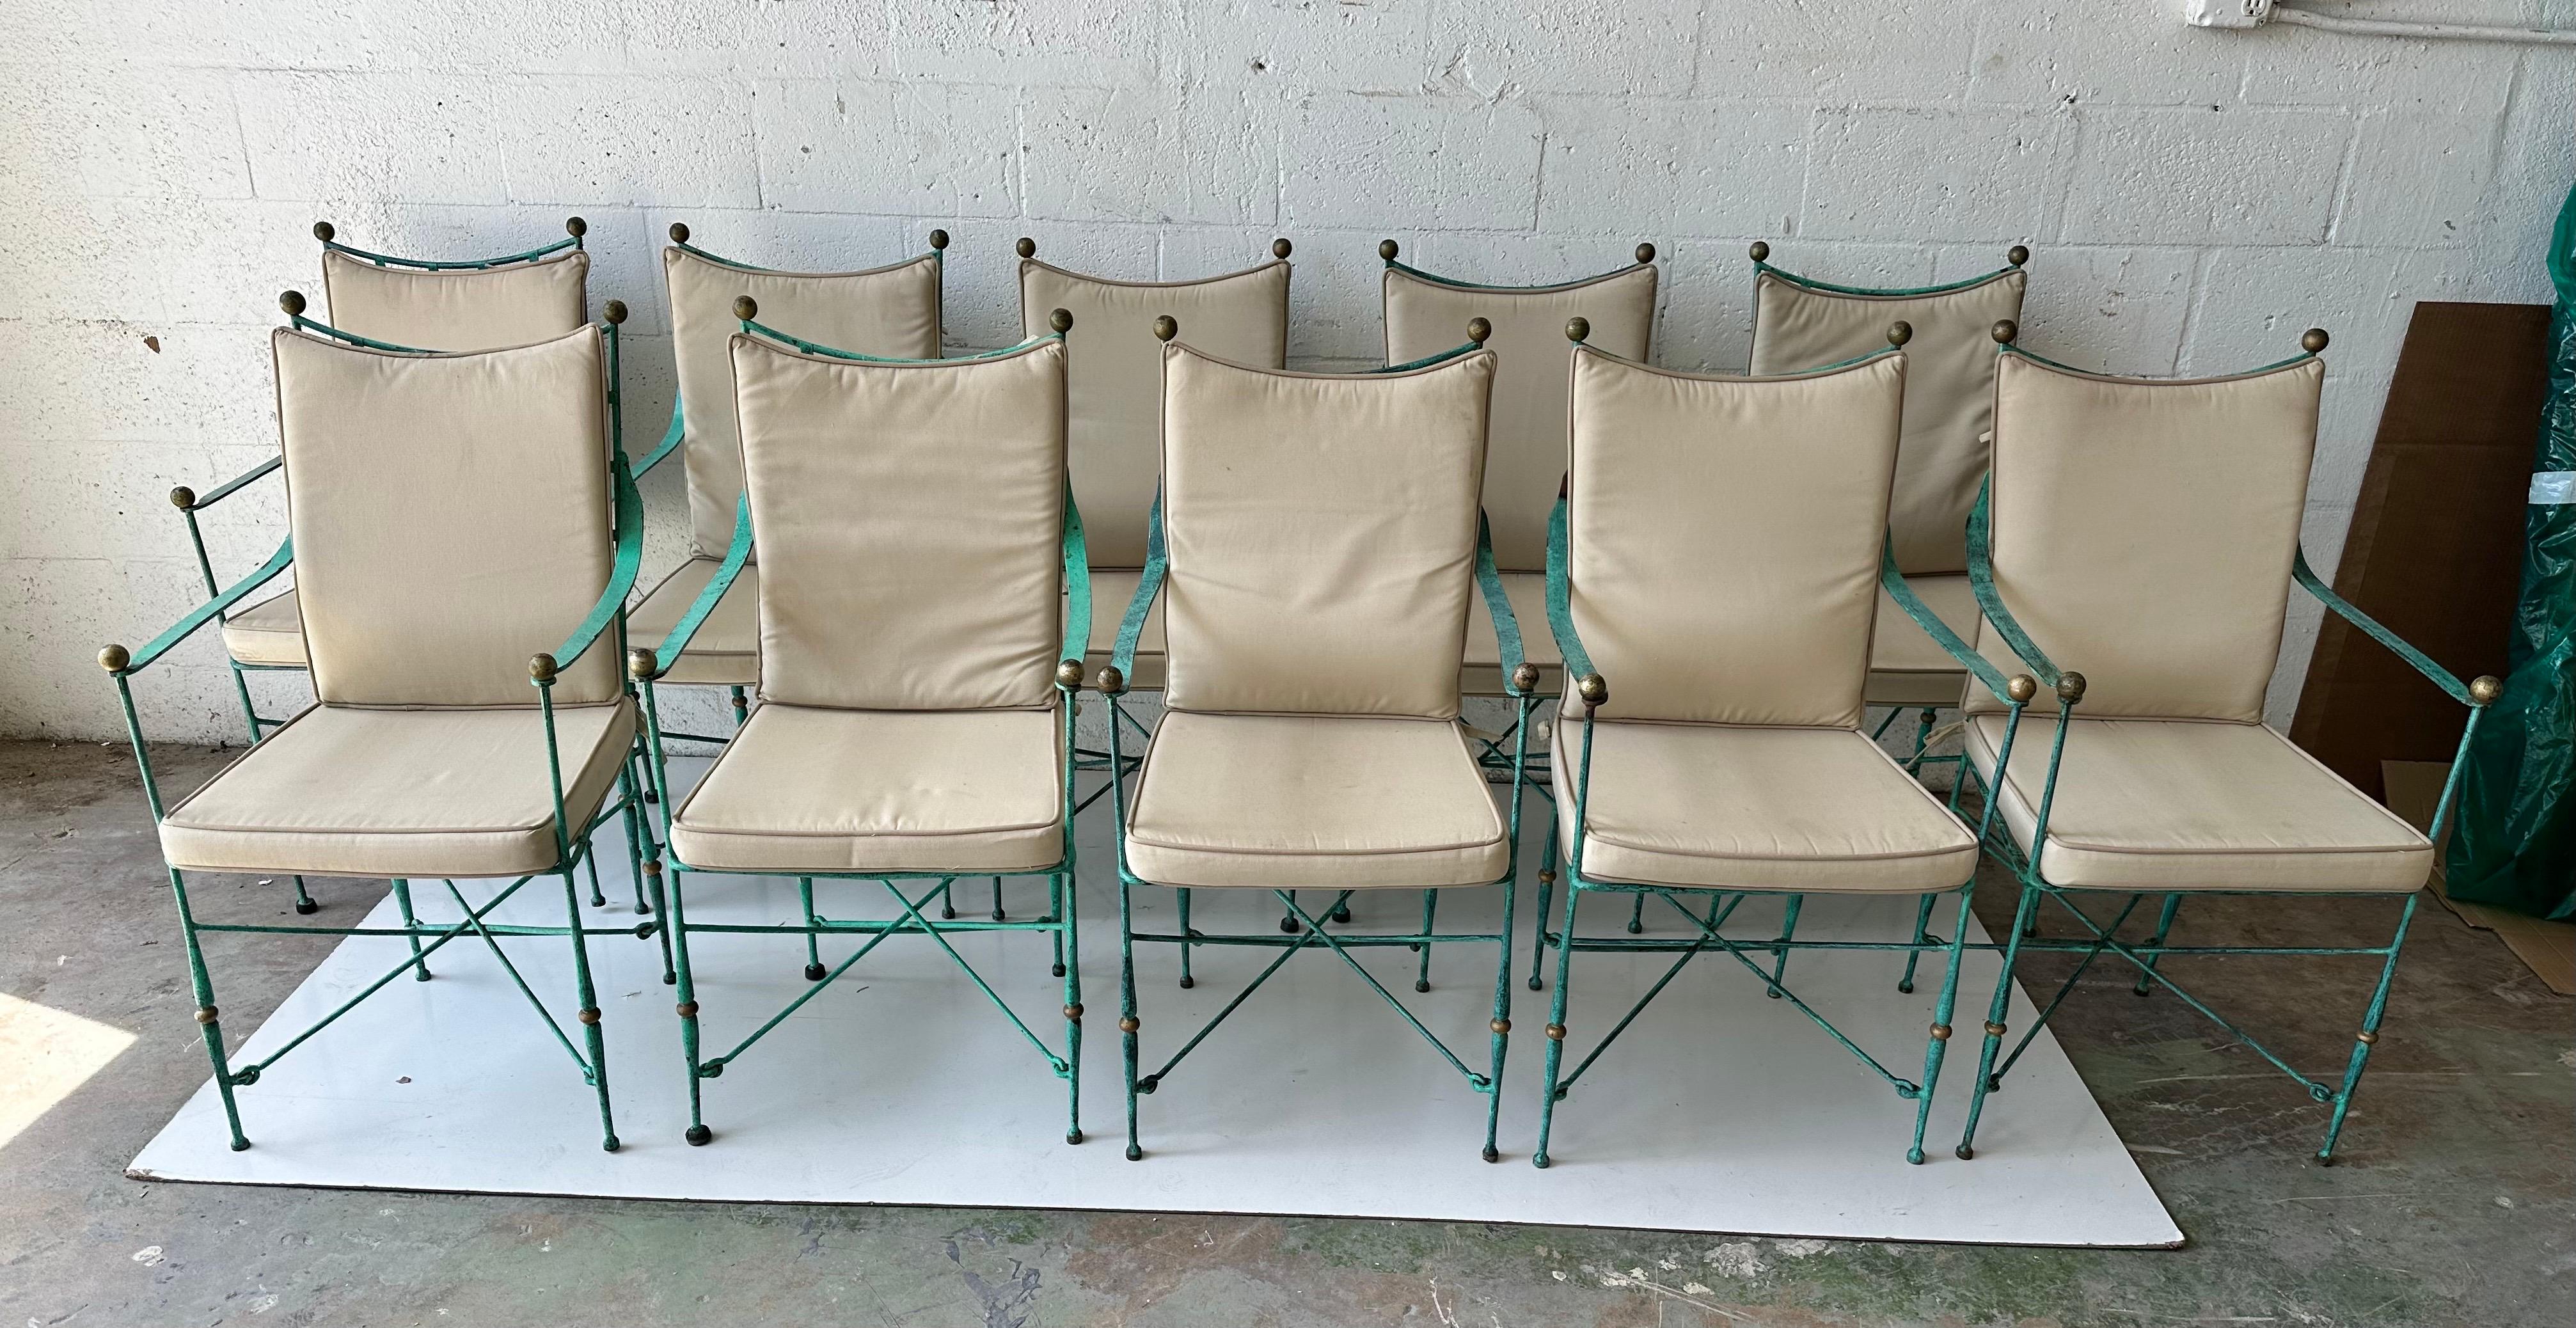 Set of ten wrought iron armchair Maison Jansen style , green patina.